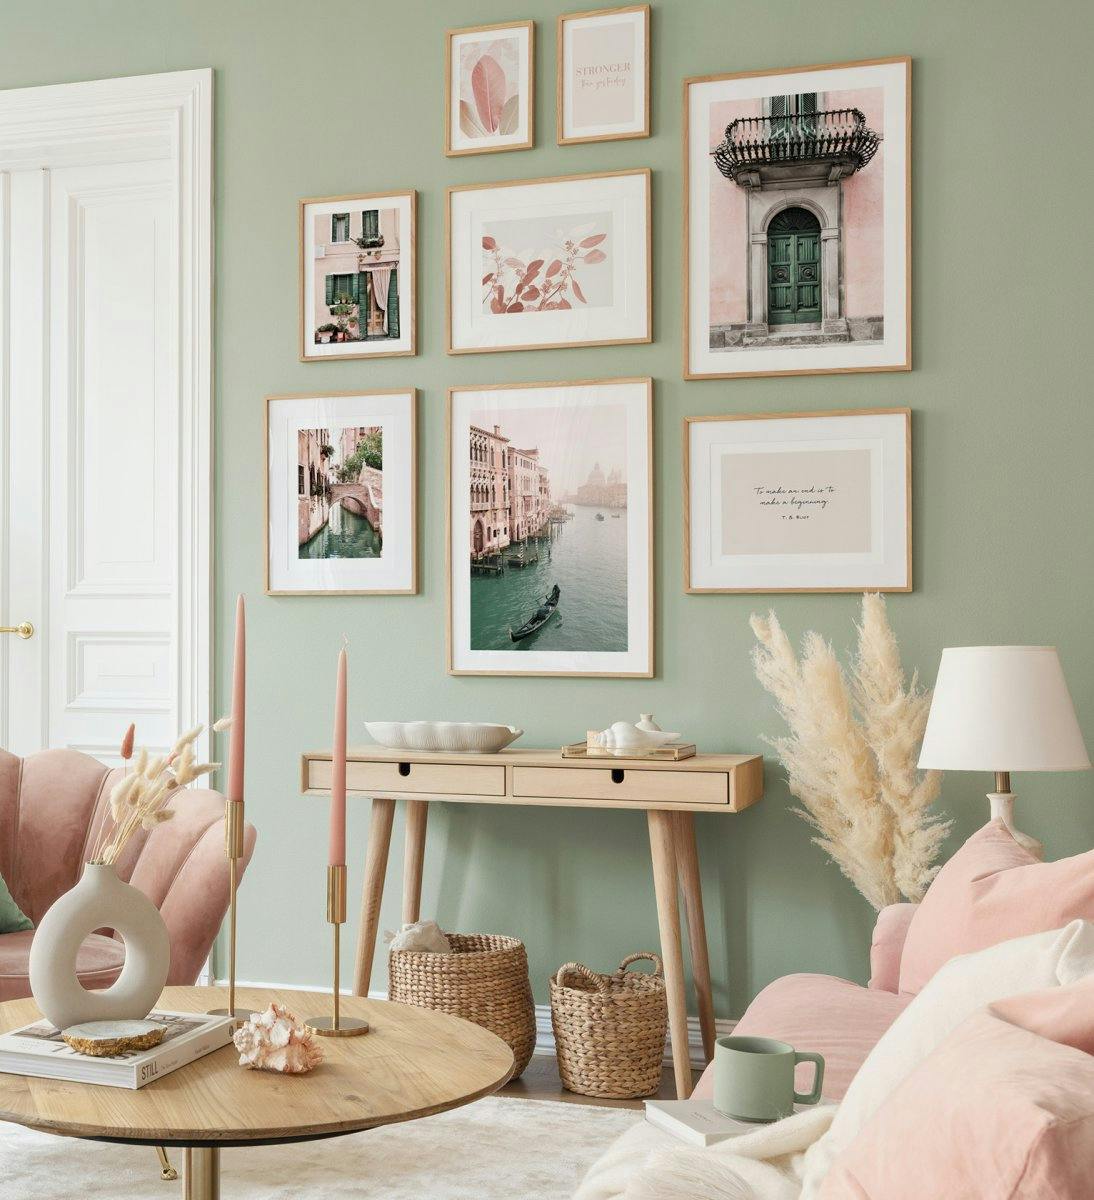 Foto's in pastelkleuren zorgen voor een speelse en frisse sfeer in de woonkamer